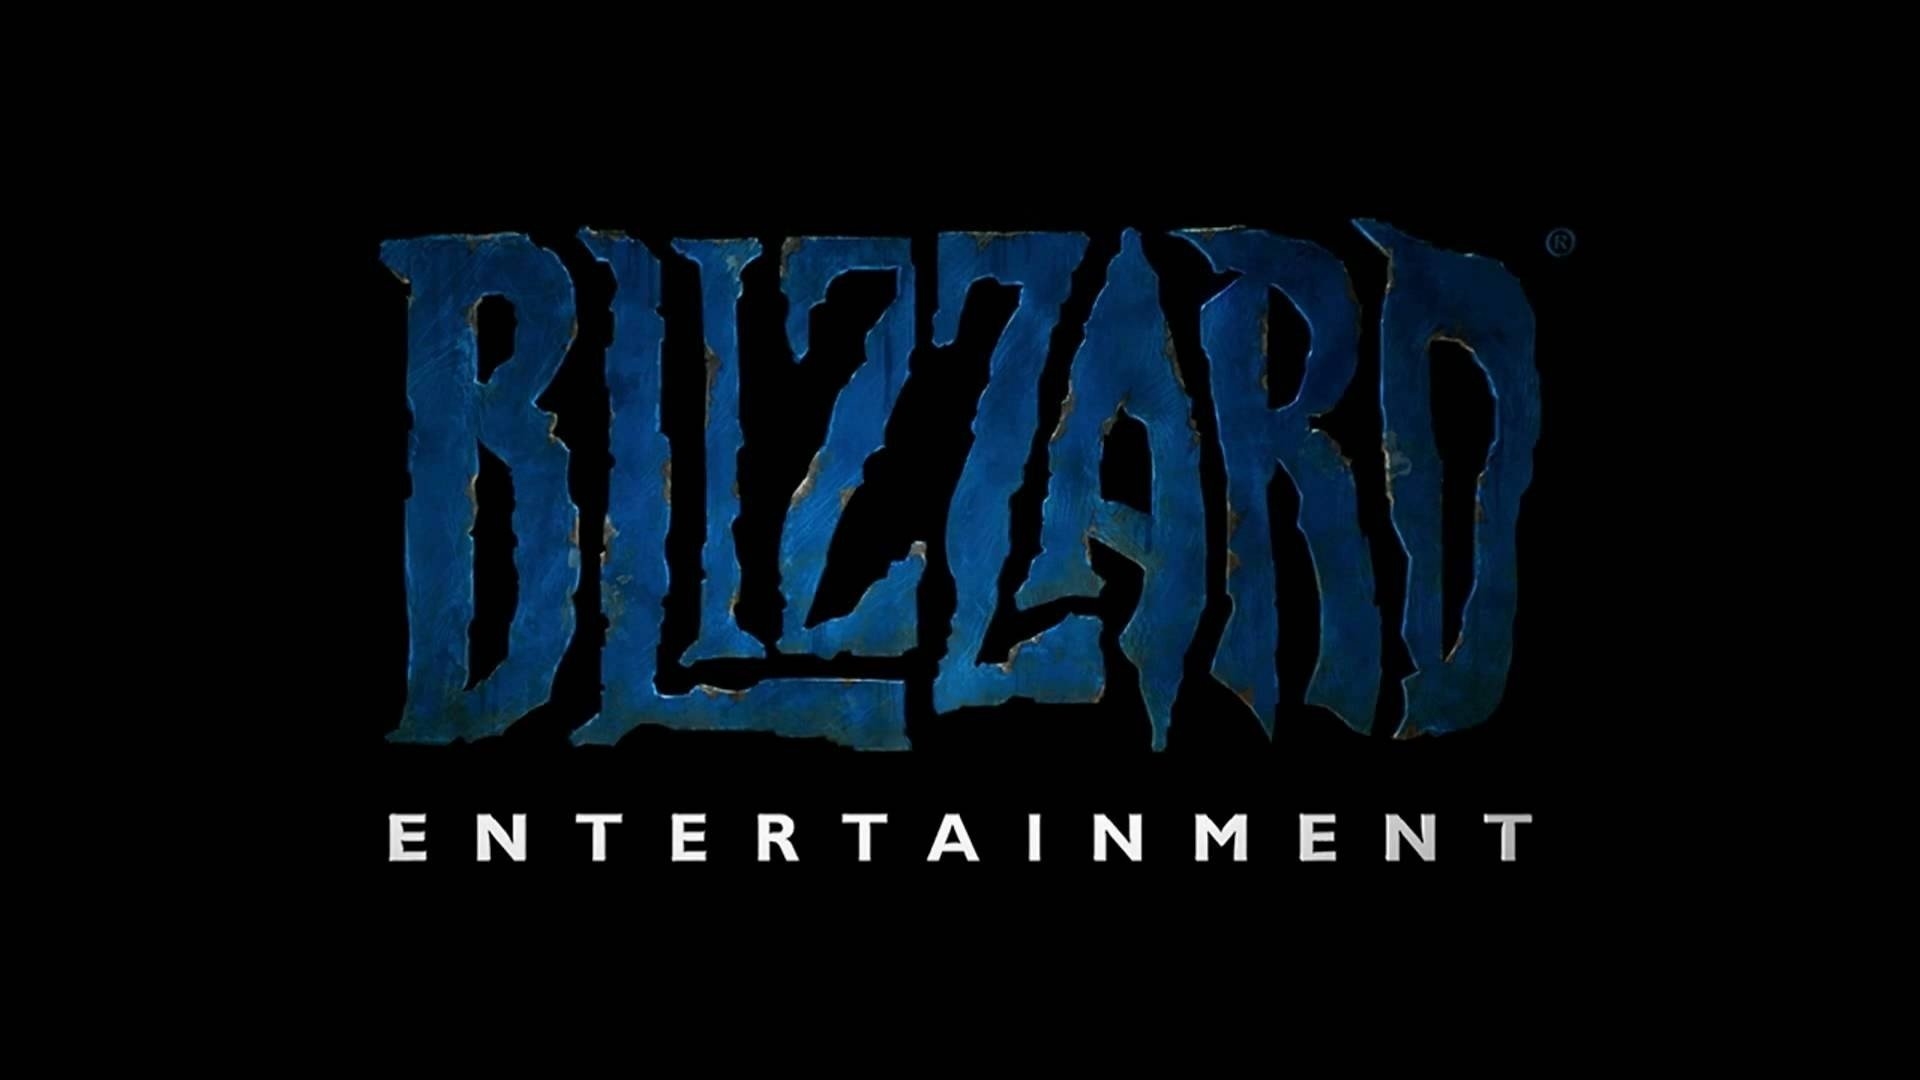 ۱۰ بازی برتر کمپانی Blizzard طبق امتیازدهی سایت Metacritic